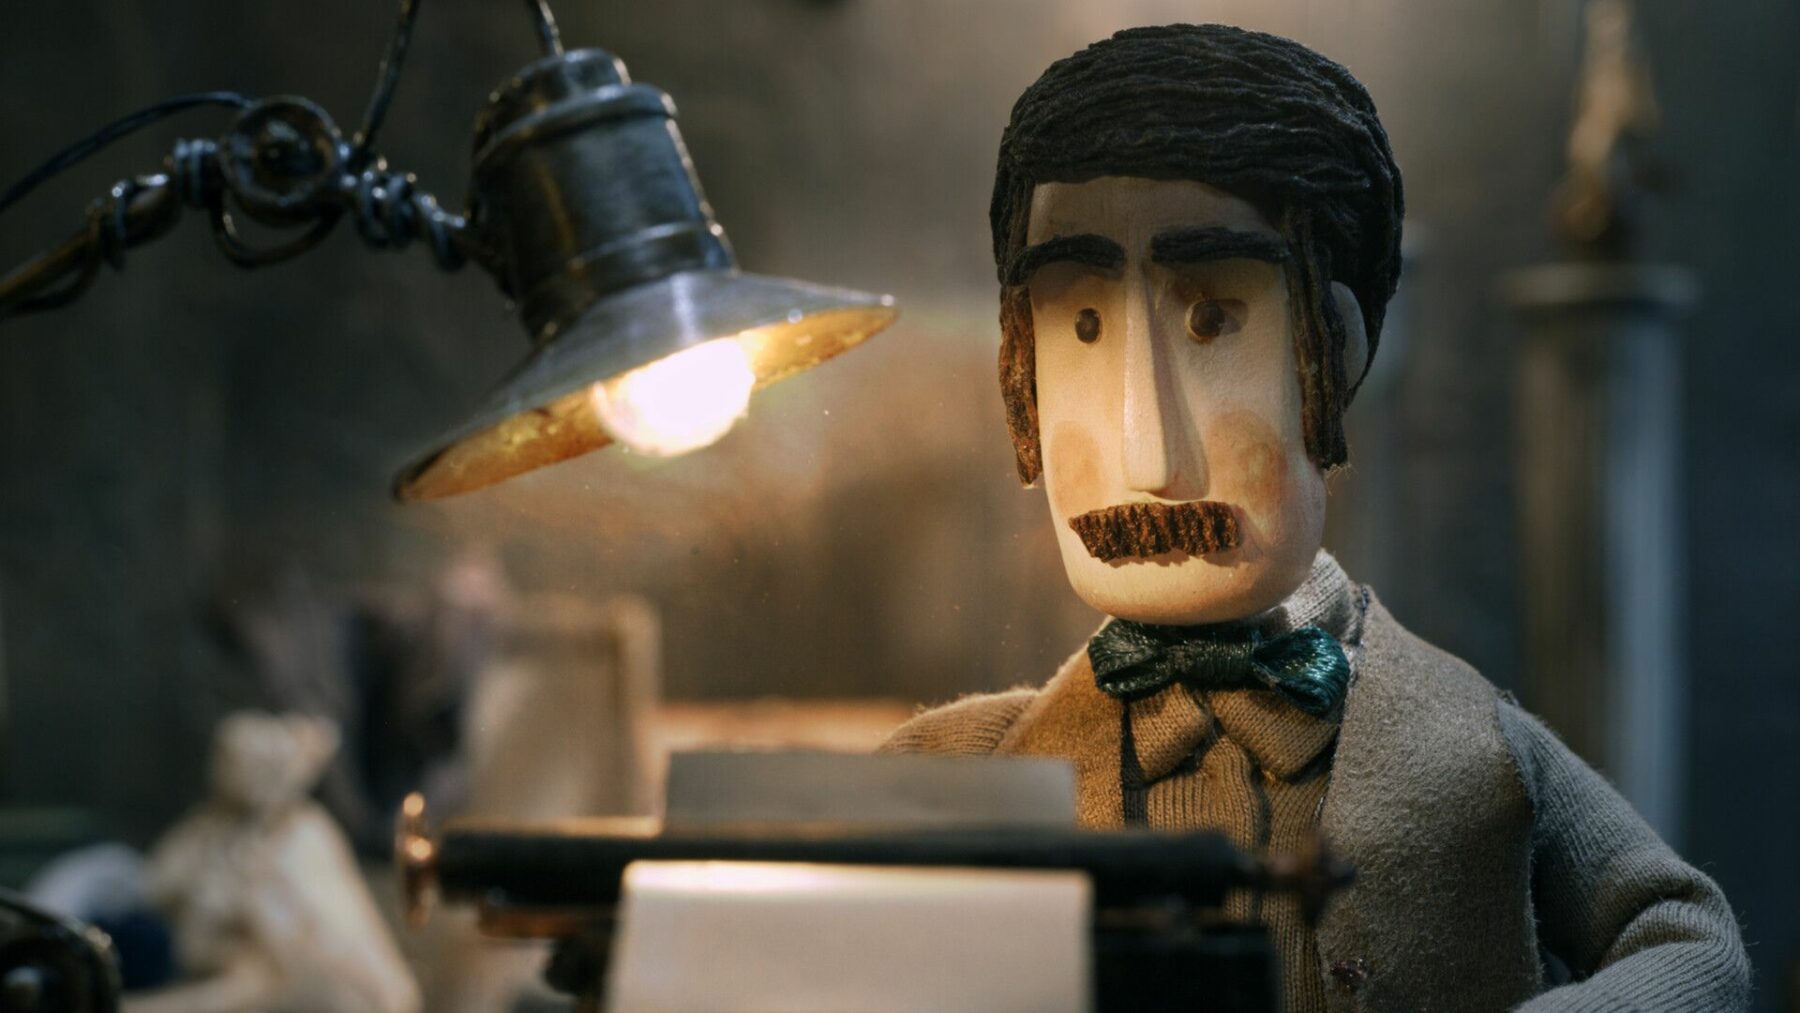 Kadr z animacji z męską postacią przy maszynie do pisania.